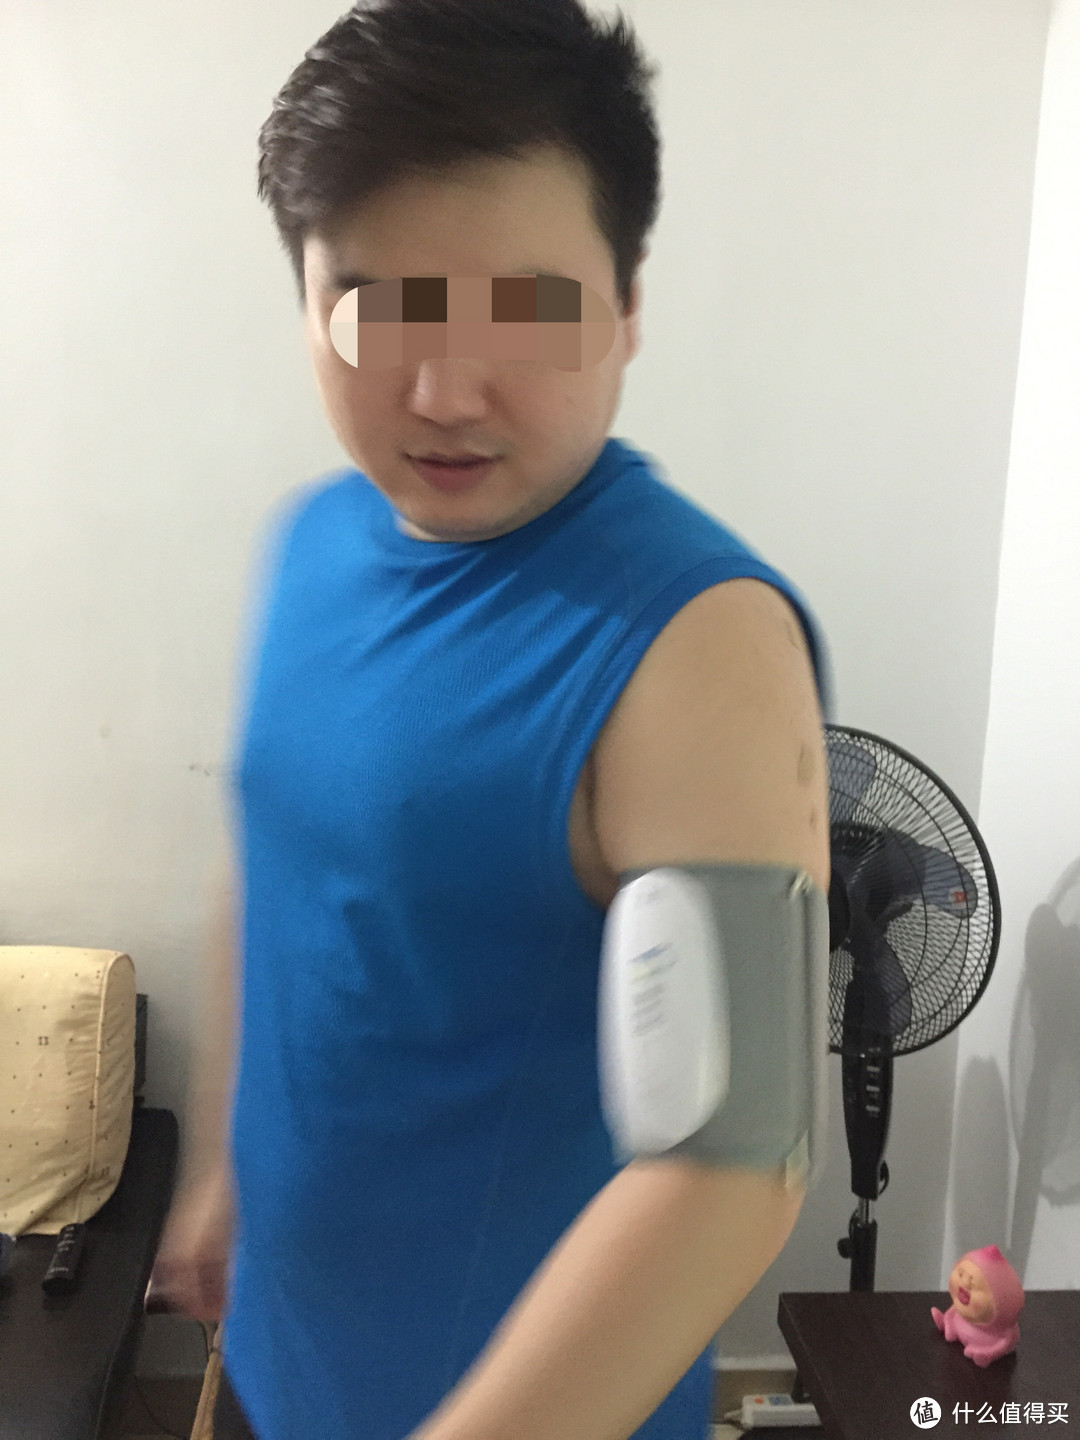 【SMZDM众测周年庆】康宝贝 KBB3 上臂式智能血压计【内有真人兽哦】